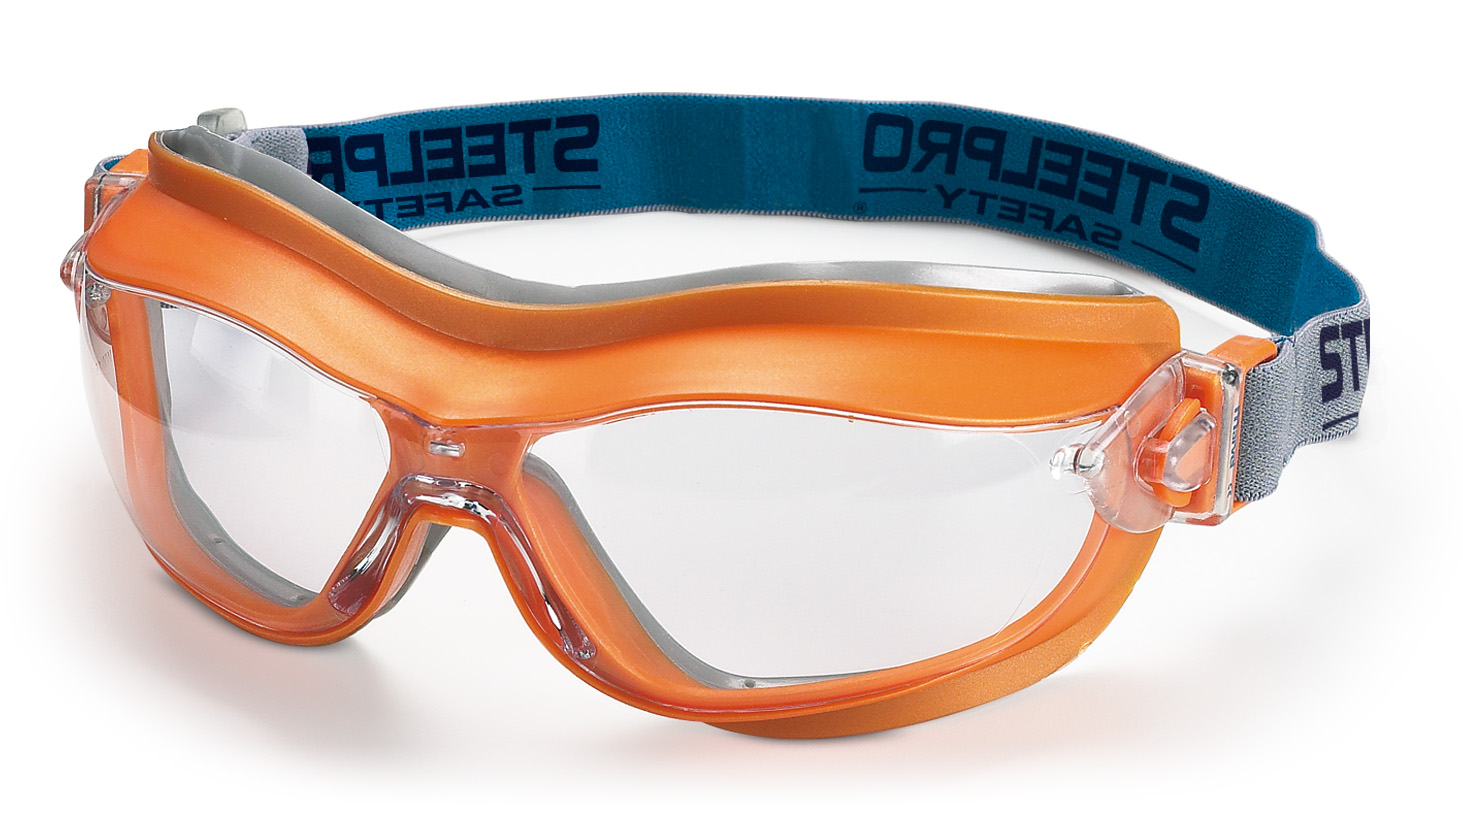 2188-GIX7 N Protecção Ocular Oculos armadura integral -  Linha Pro Mod. 